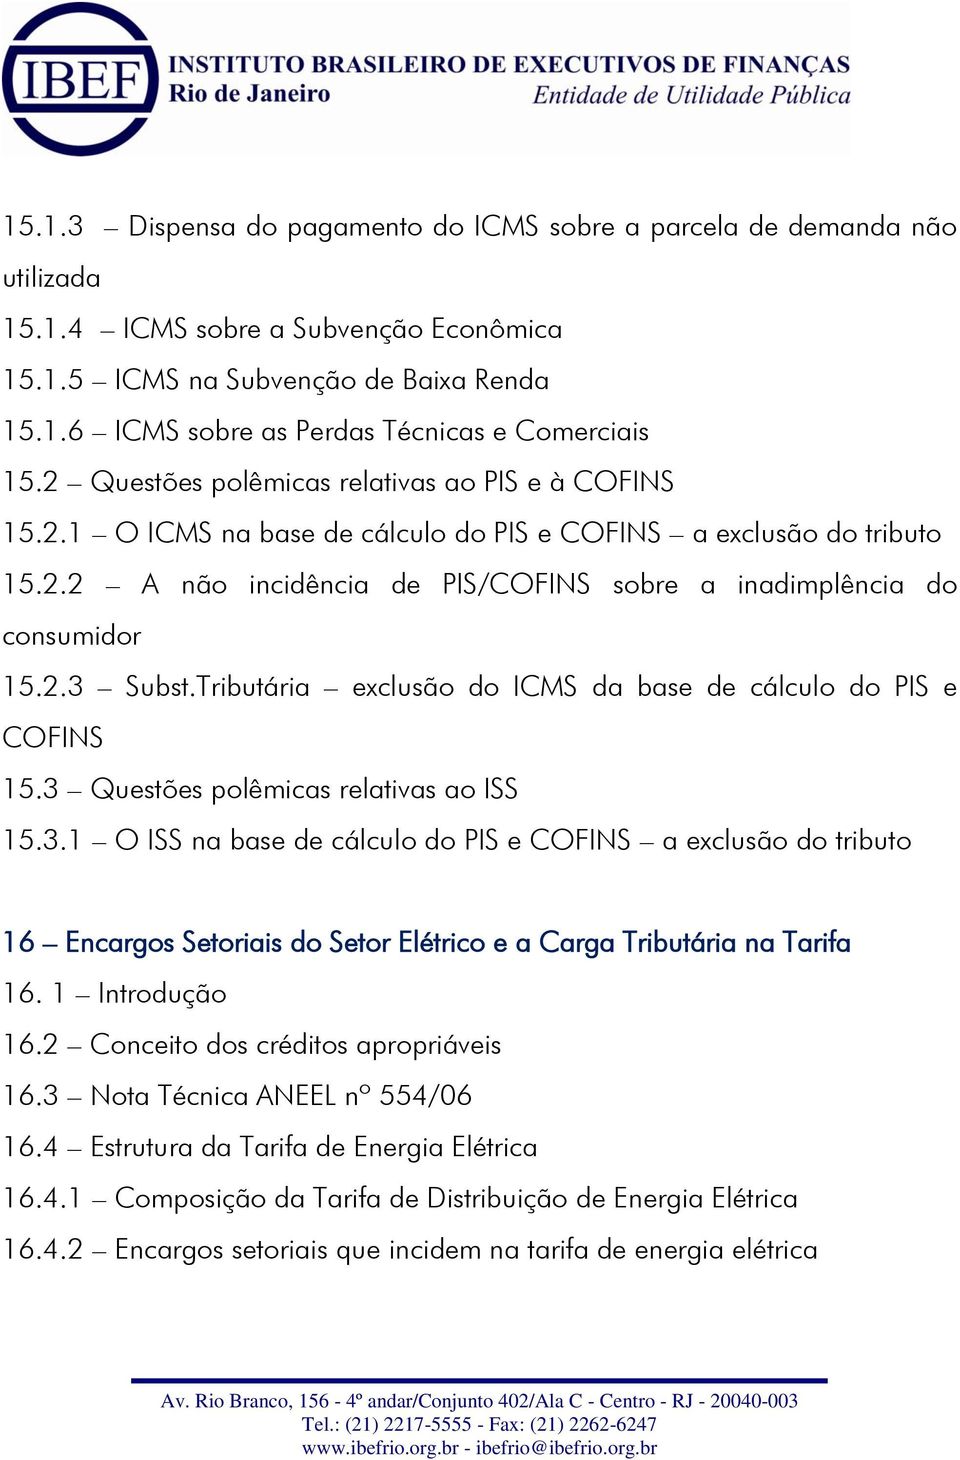 Tributária exclusão do ICMS da base de cálculo do PIS e COFINS 15.3 